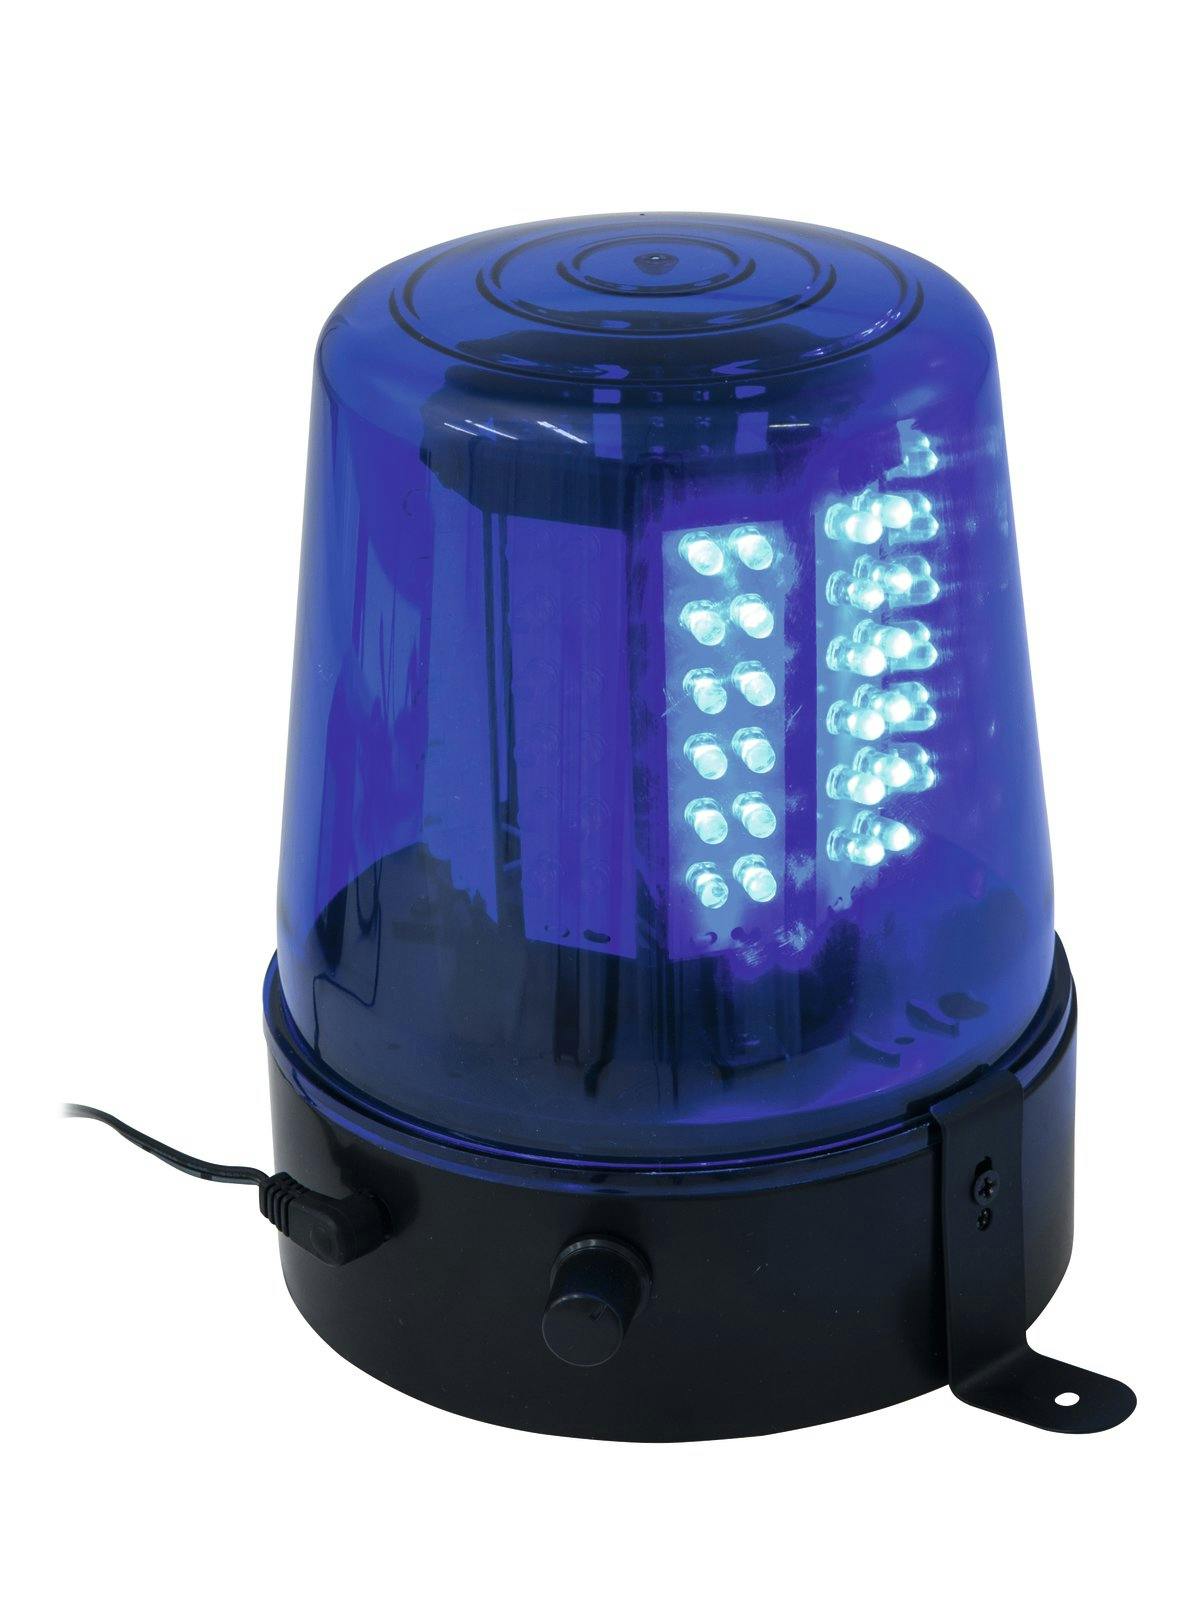 Polizeilicht Feuerwehrlicht LED BLAU - 108 LEDs - regelbar, inkl. Netzteil